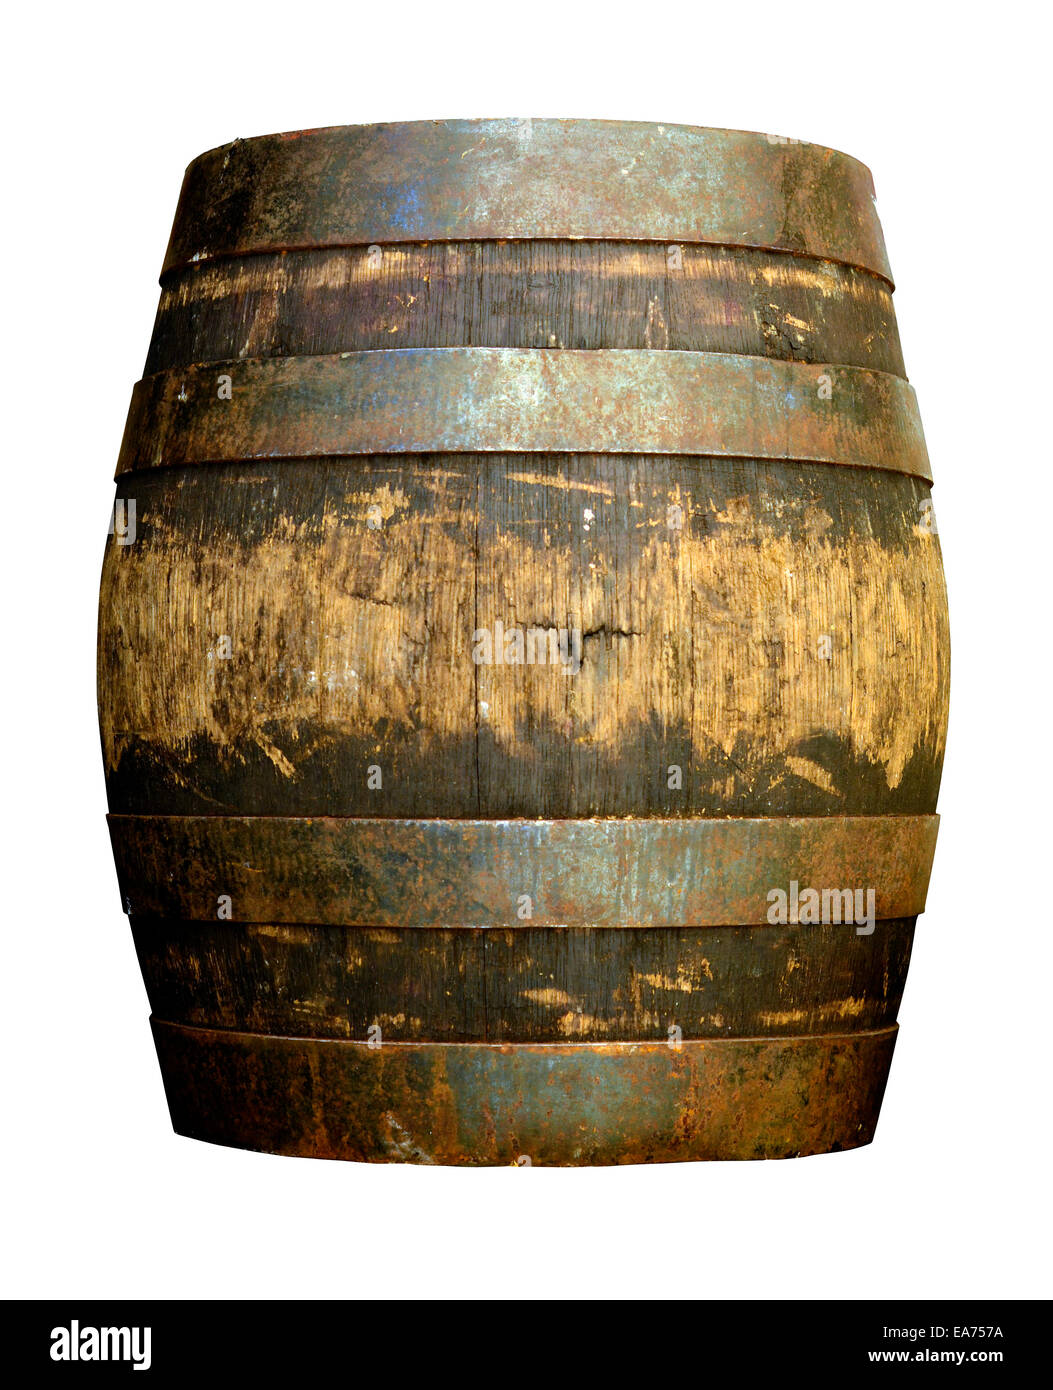 Old Wooden Beer Barrel Stock Photo